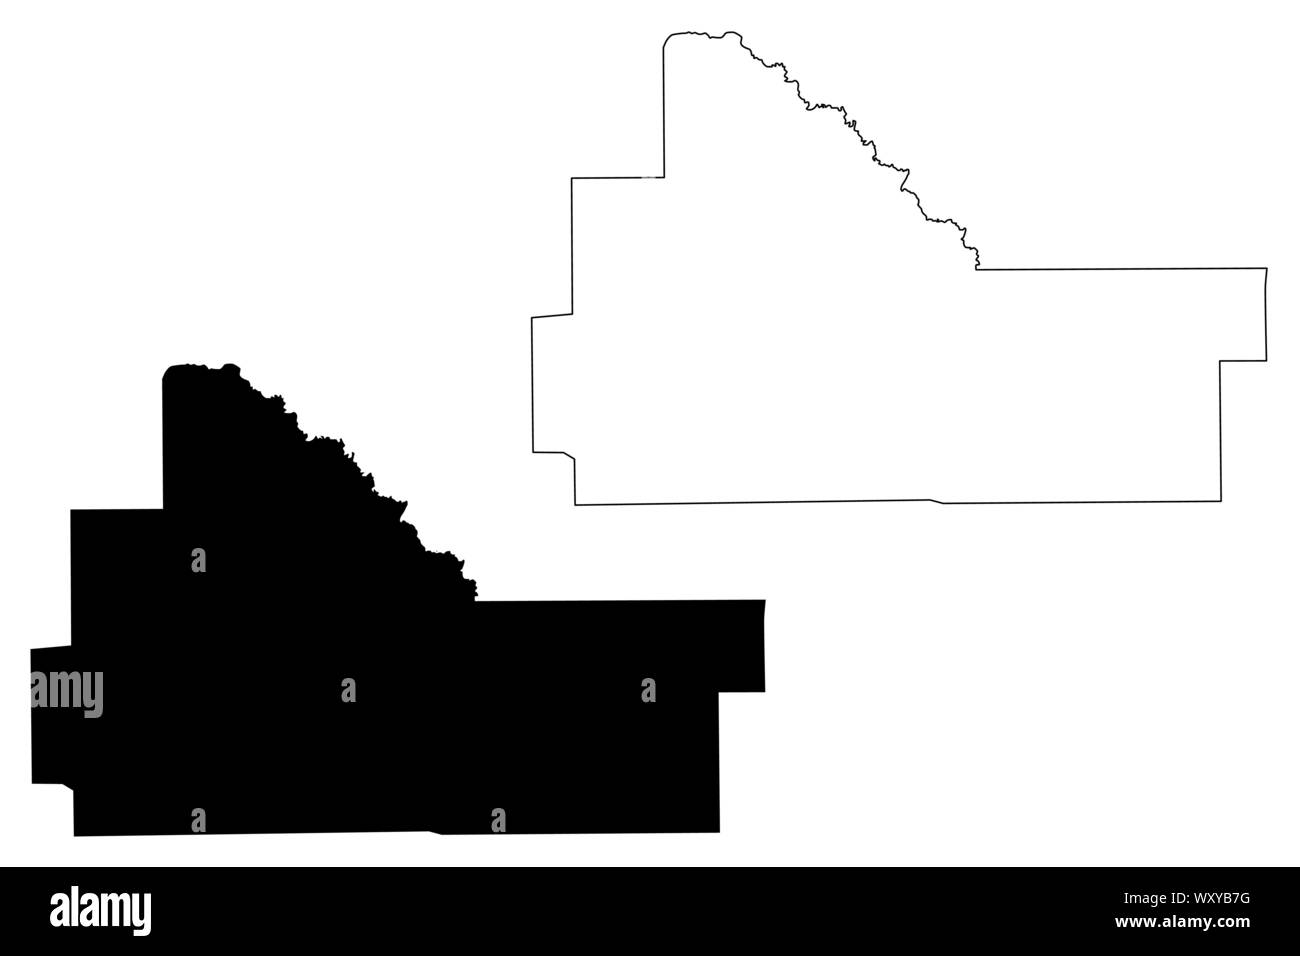 Wilcox County, Alabama (Grafschaften in Alabama, Vereinigte Staaten von Amerika, USA, USA, USA) Karte Vektor-illustration, kritzeln Skizze Wilcox Karte Stock Vektor